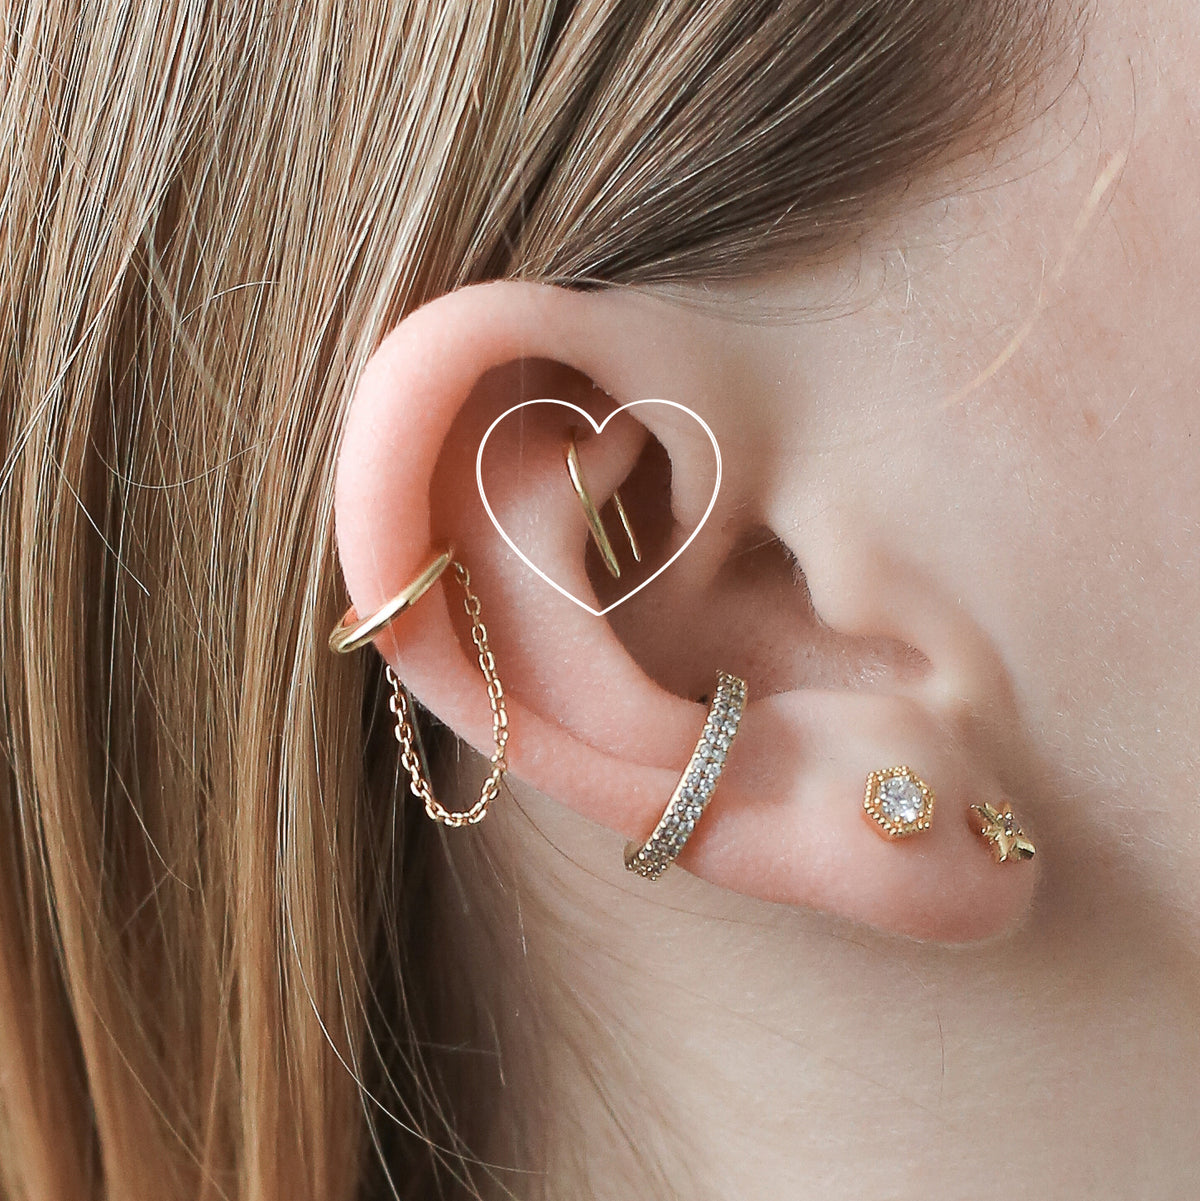 1PC Daith Helix Piercing Earring for Women Zirconia Hoop Earring Star Helix Lobe  Flat Ear Cartilage Septum Piercing Body Jewelry - AliExpress